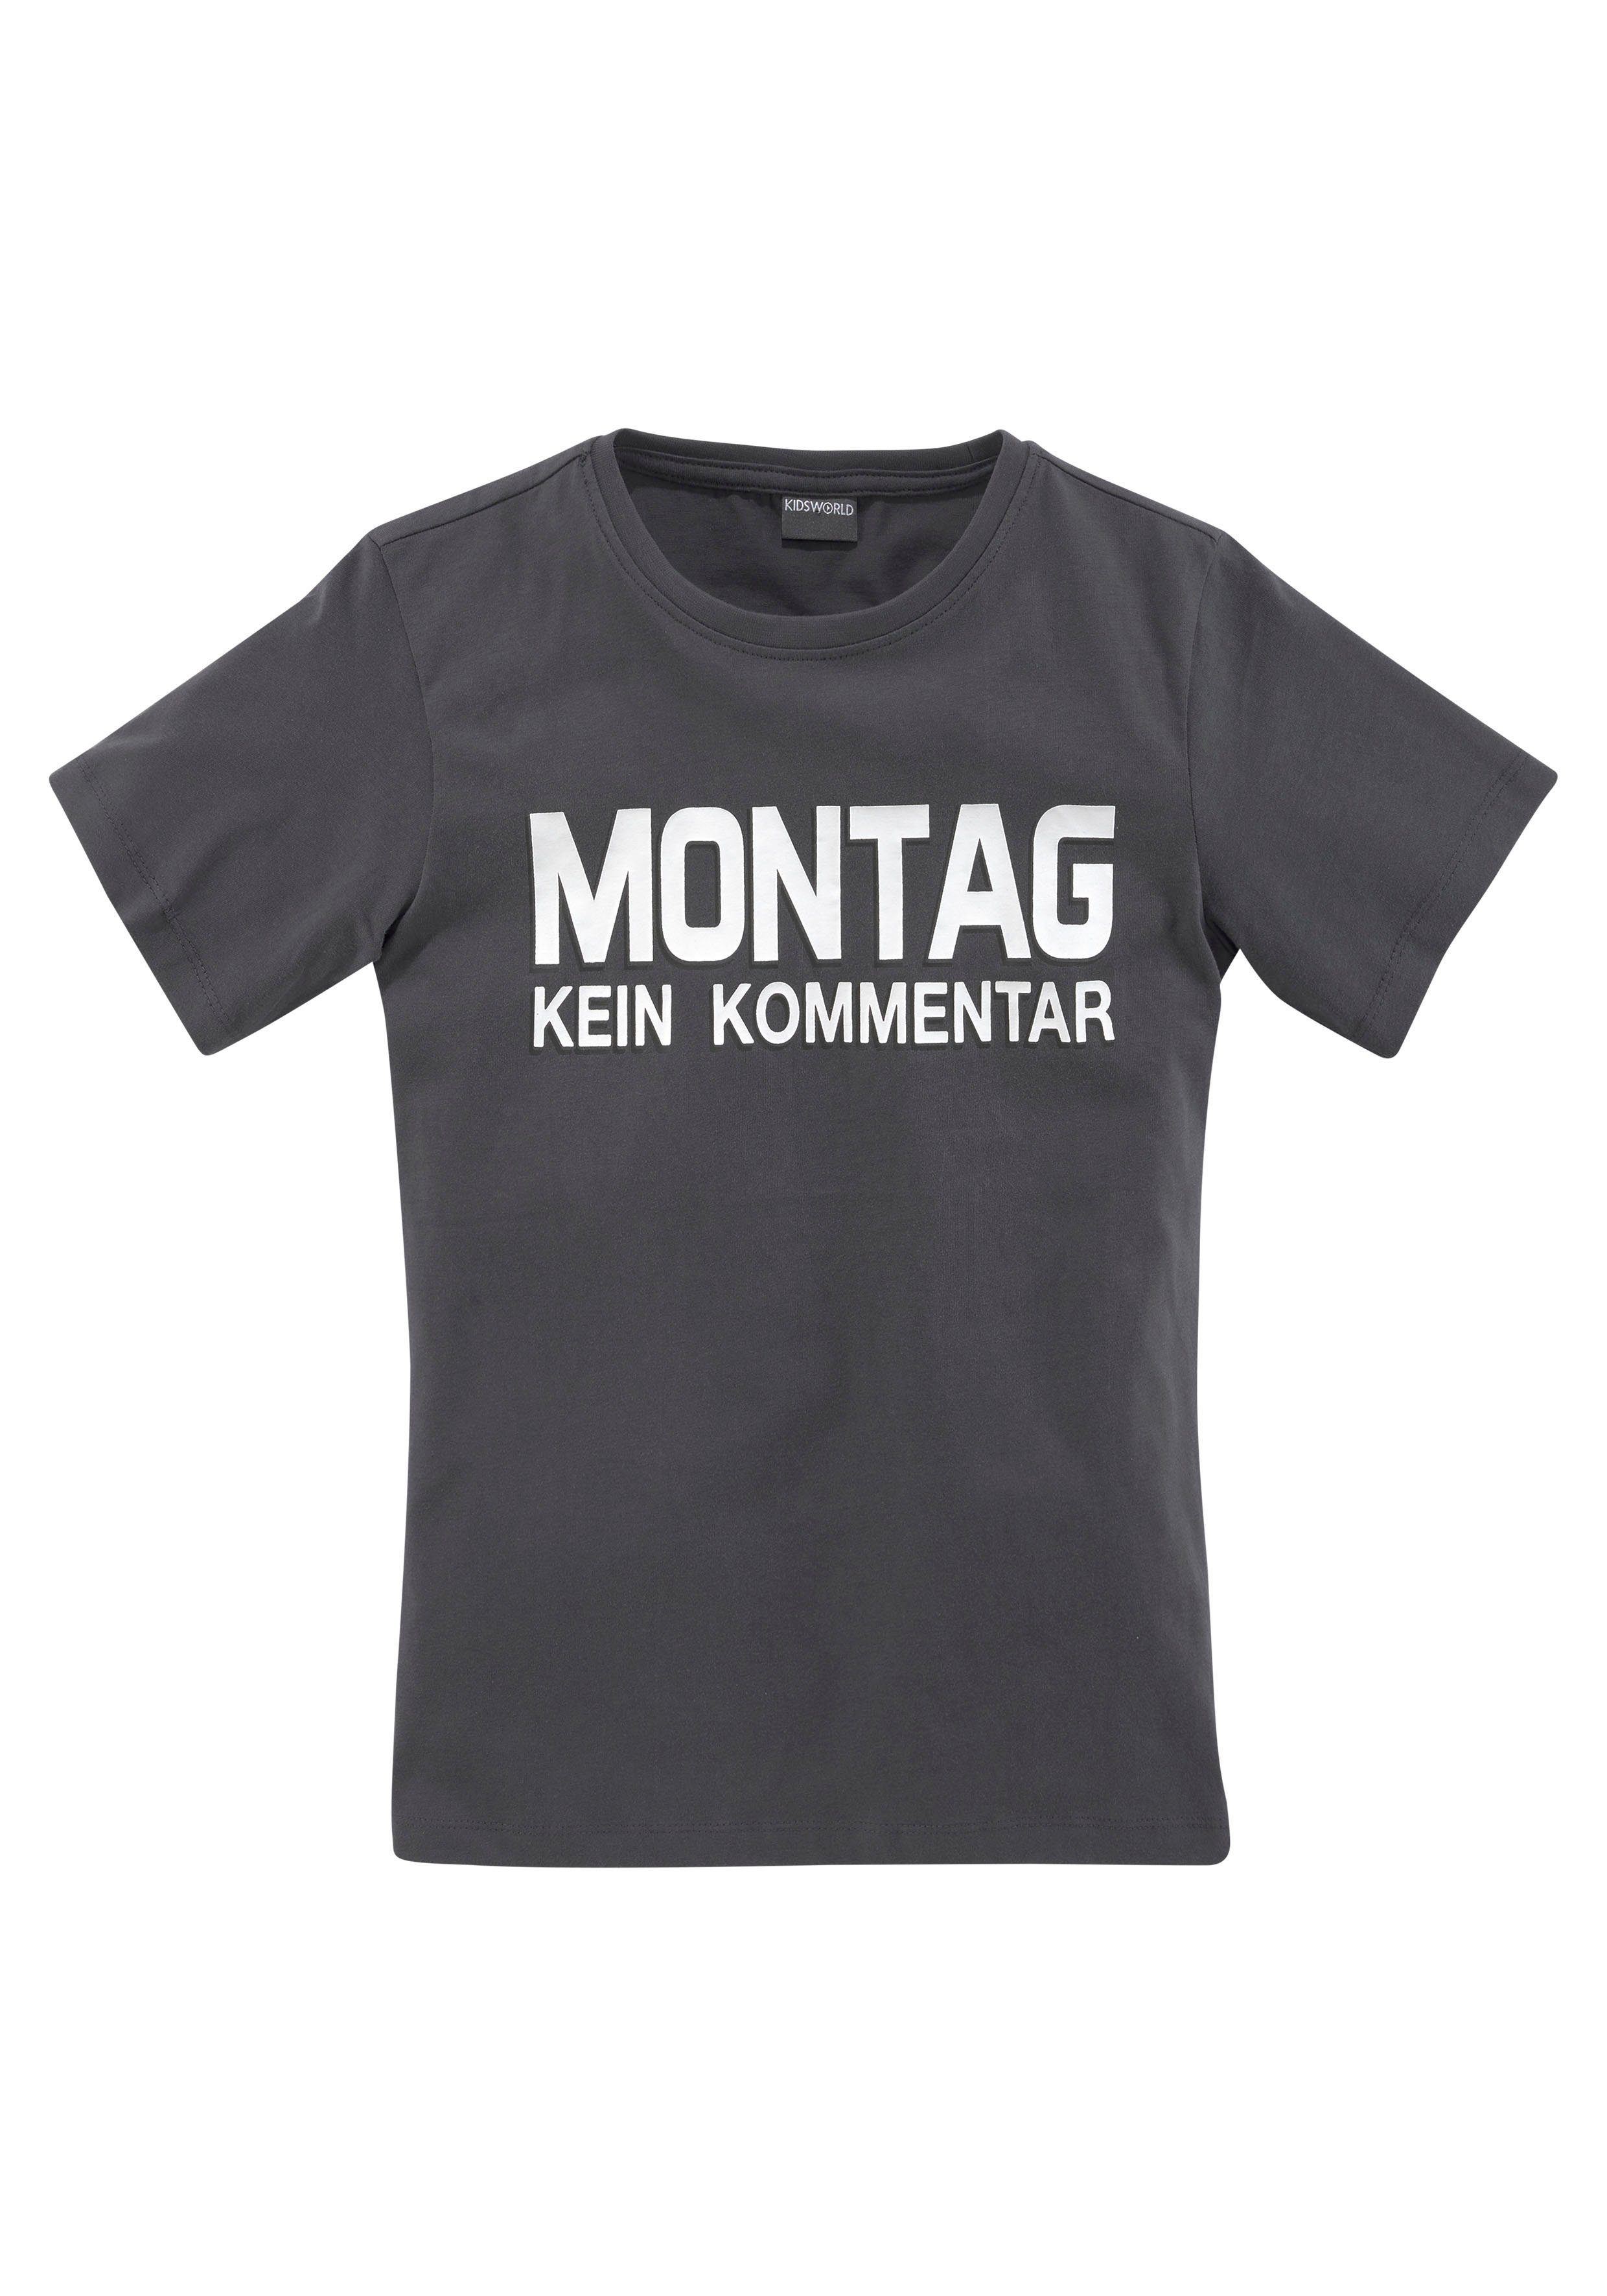 Kinder Teens (Gr. 128 - 182) KIDSWORLD T-Shirt MONTAG - KEIN KOMMENTAR